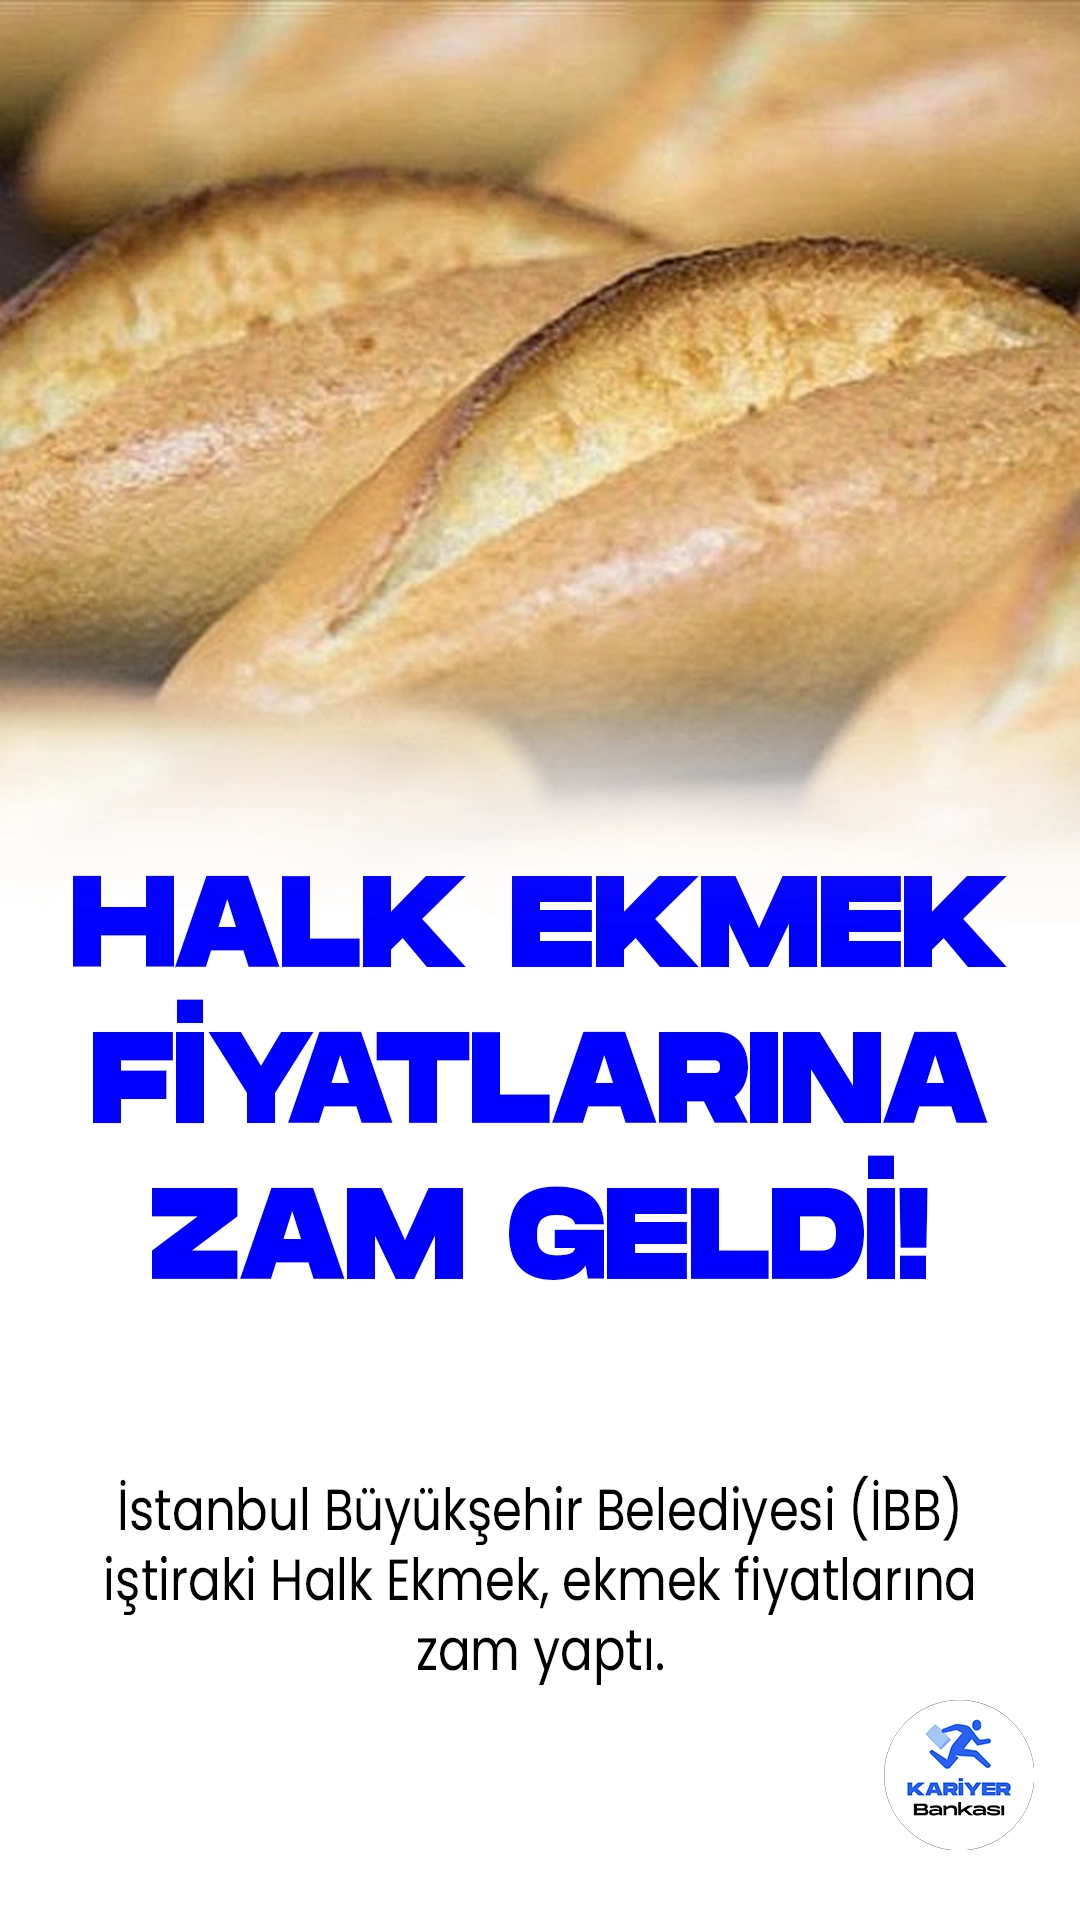 İstanbul Büyükşehir Belediyesi (İBB) iştiraki Halk Ekmek, ekmek fiyatlarına zam yaptı. Şirket tarafından üretilen ve şimdiye kadar 3 liradan satışa sunulan normal ekmek, yüzde 66,6 oranında bir artışla 5 liraya çıkarılıyor.